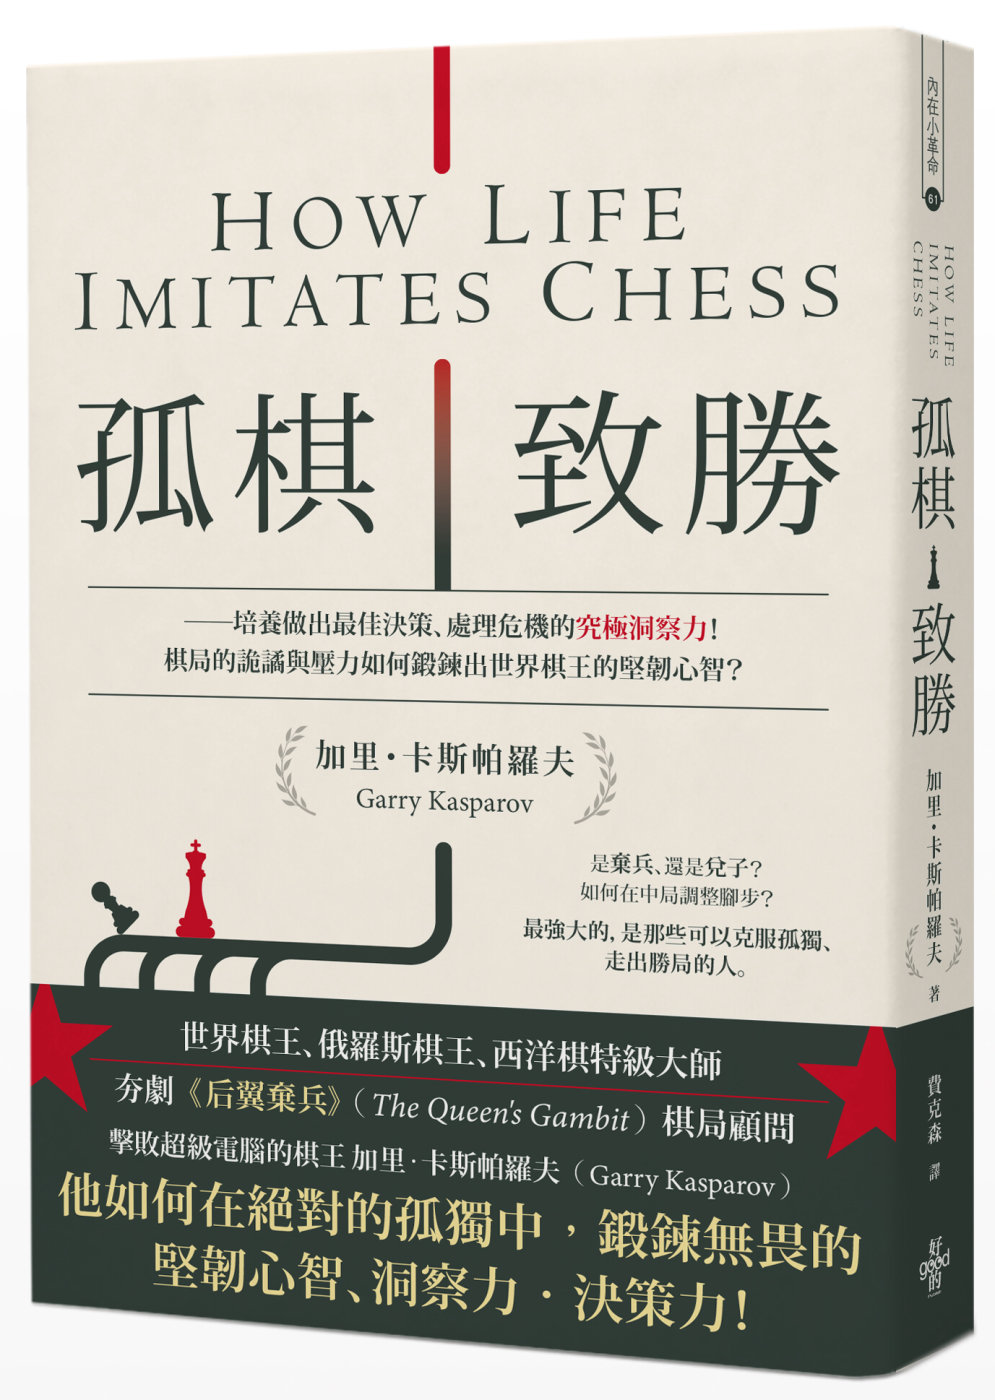 孤棋致勝：培養做出最佳決策、處理危機的究極洞察力！棋局的詭譎與壓力如何鍛鍊出世界棋王的堅韌心智？